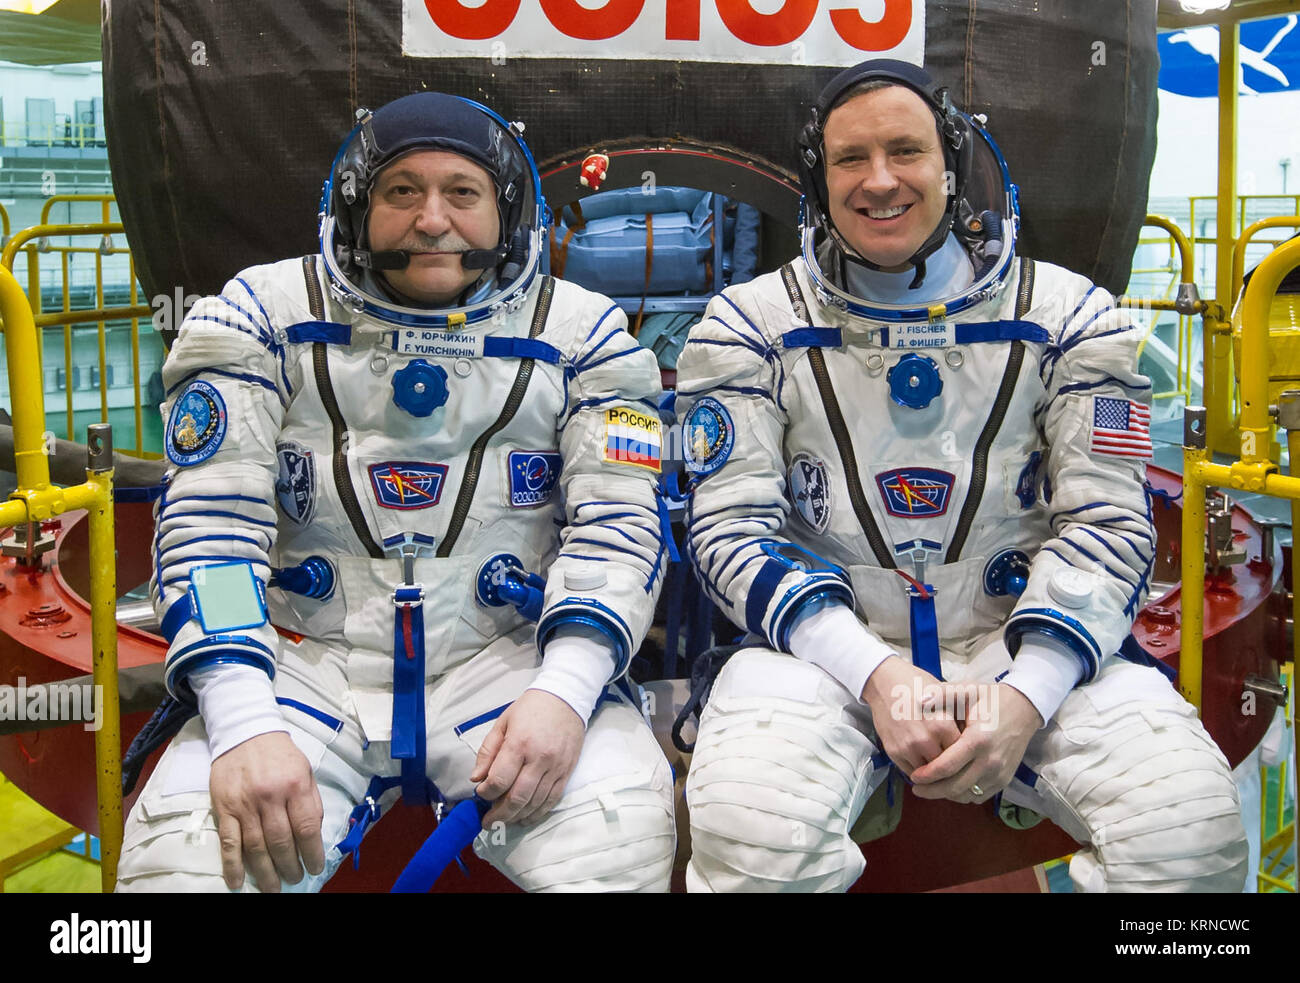 09-35-49: nell'integrazione costruzione presso il cosmodromo di Baikonur in Kazakistan, Expedition 51 equipaggi Fyodor Yurchikhin di l'agenzia Spaziale Federale Russa Roscosmos (a sinistra) e Jack Fischer della NASA (a destra) pone per le immagini aprile 6 nella parte anteriore del loro Soyuz MS-04 veicolo spaziale come parte del training di pre-lancio preparati. Fischer e Yurchikhin lancerà 20 aprile sul Soyuz MS-04 navicella spaziale per quattro e una metà mese missione sulla Stazione spaziale internazionale. La NASA/Gagarin Cosmonaut Training Center/Andrey Shelepin Soyuz MS-04 equipaggio di fronte la loro navetta spaziale Foto Stock